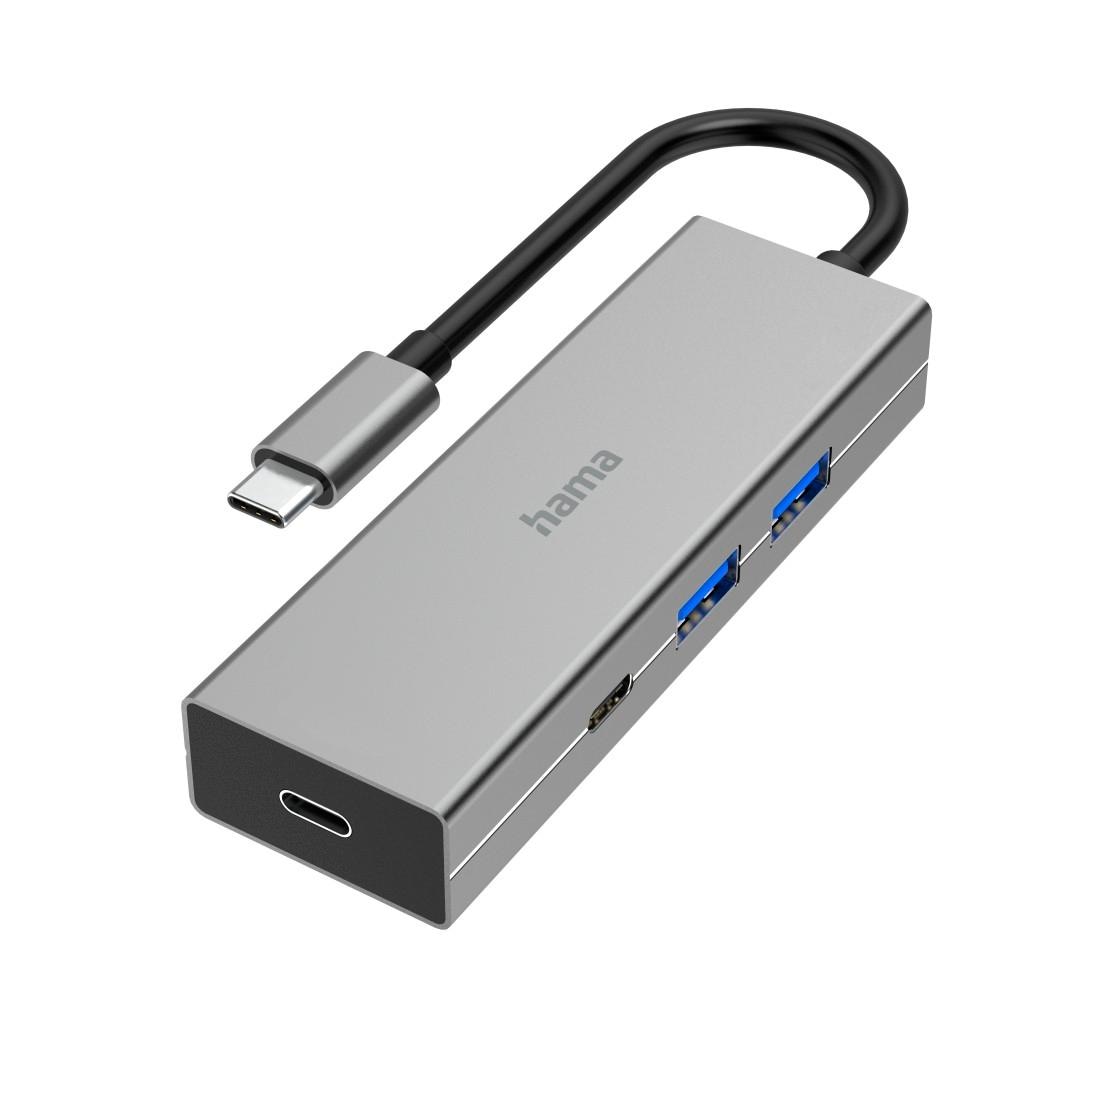 Hama USB-Adapter »USB-C-Hub, 4 Ports, 2x USB-A, 2x USB-C, USB 3.2 Gen1, 5 Gbit/s«, USB-C zu USB 3.2 Gen 1 Type A-USB-C, 15 cm